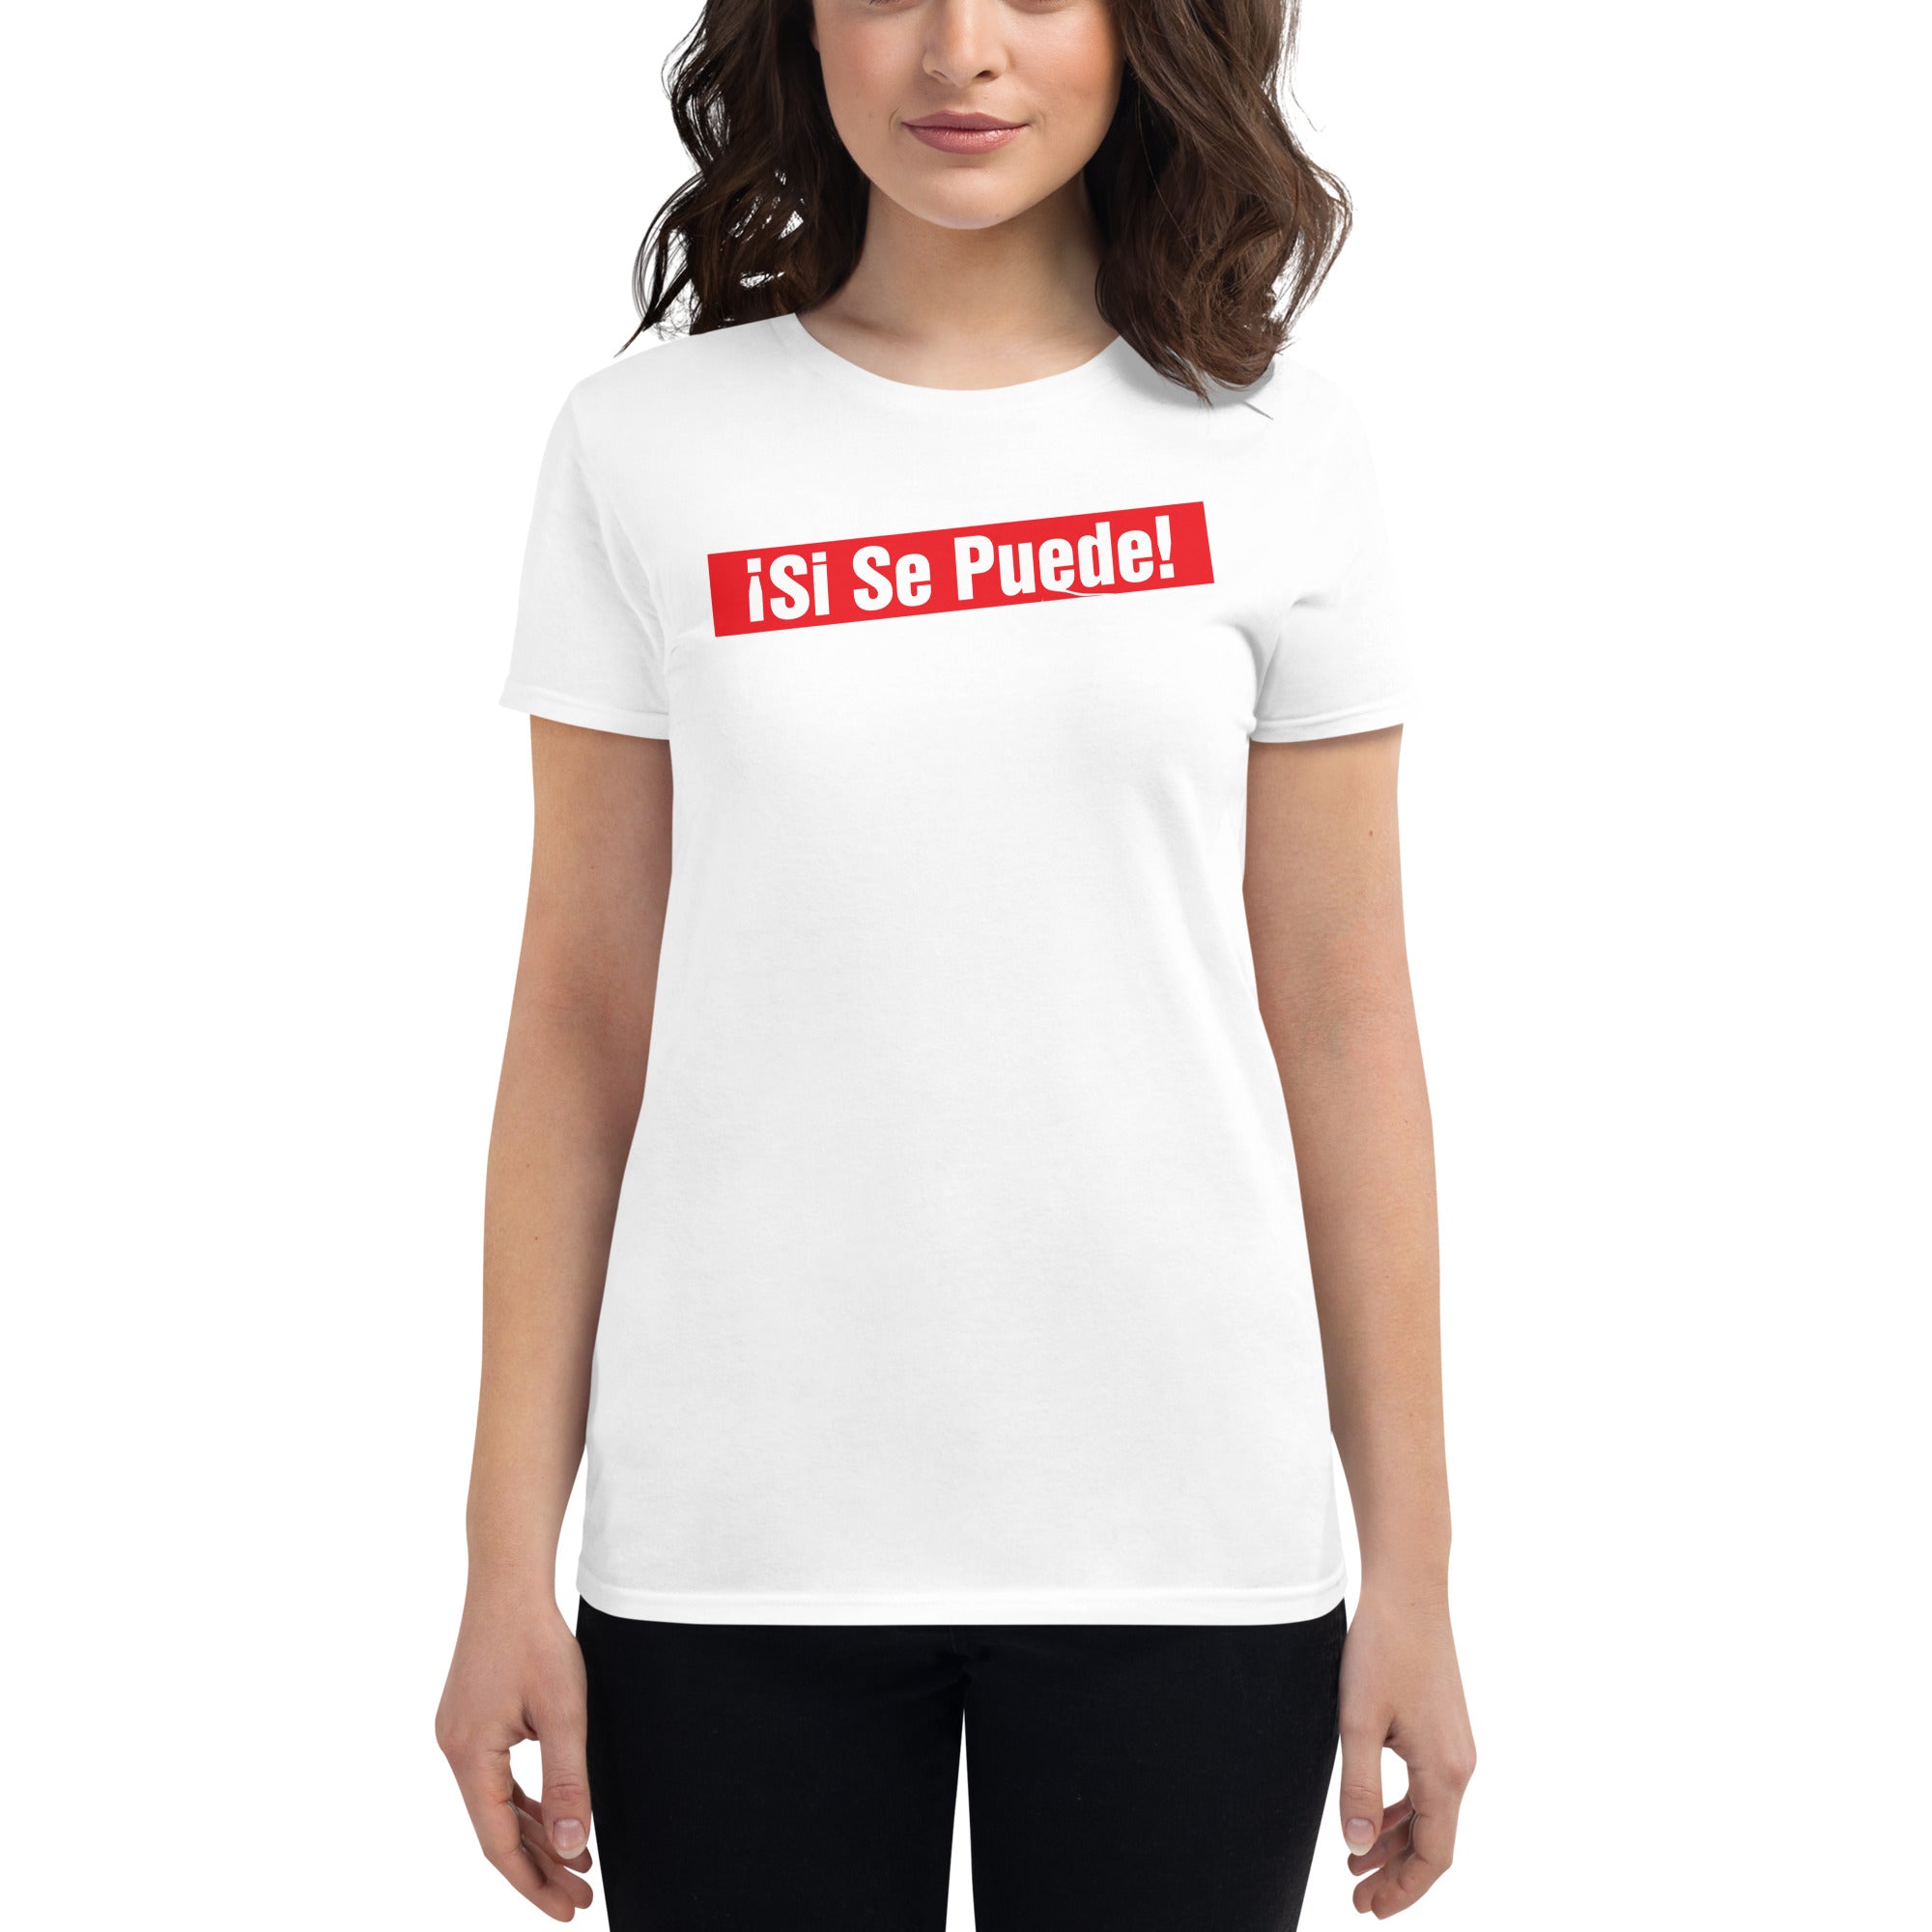 Si Women's short sleeve t-shirt